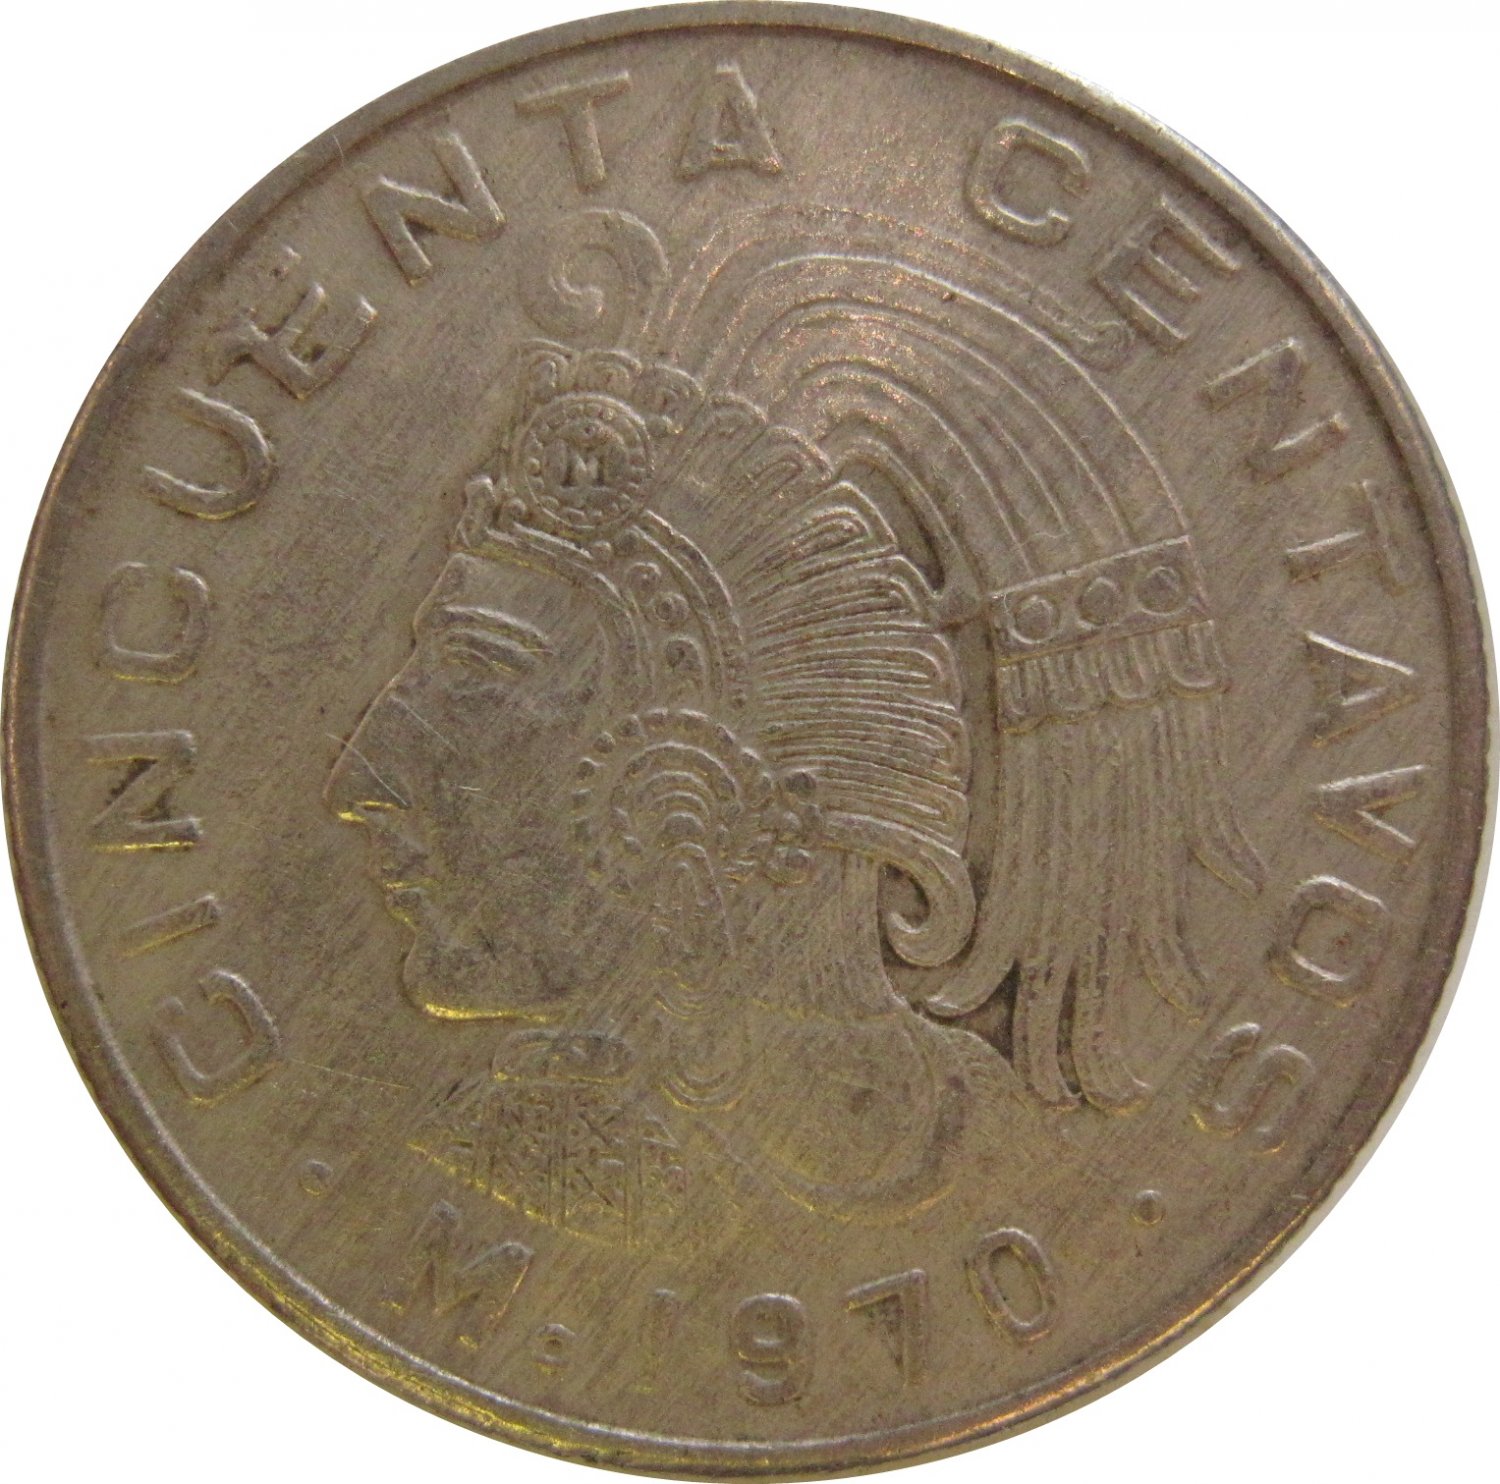 1970 Mexico 50 Centavos